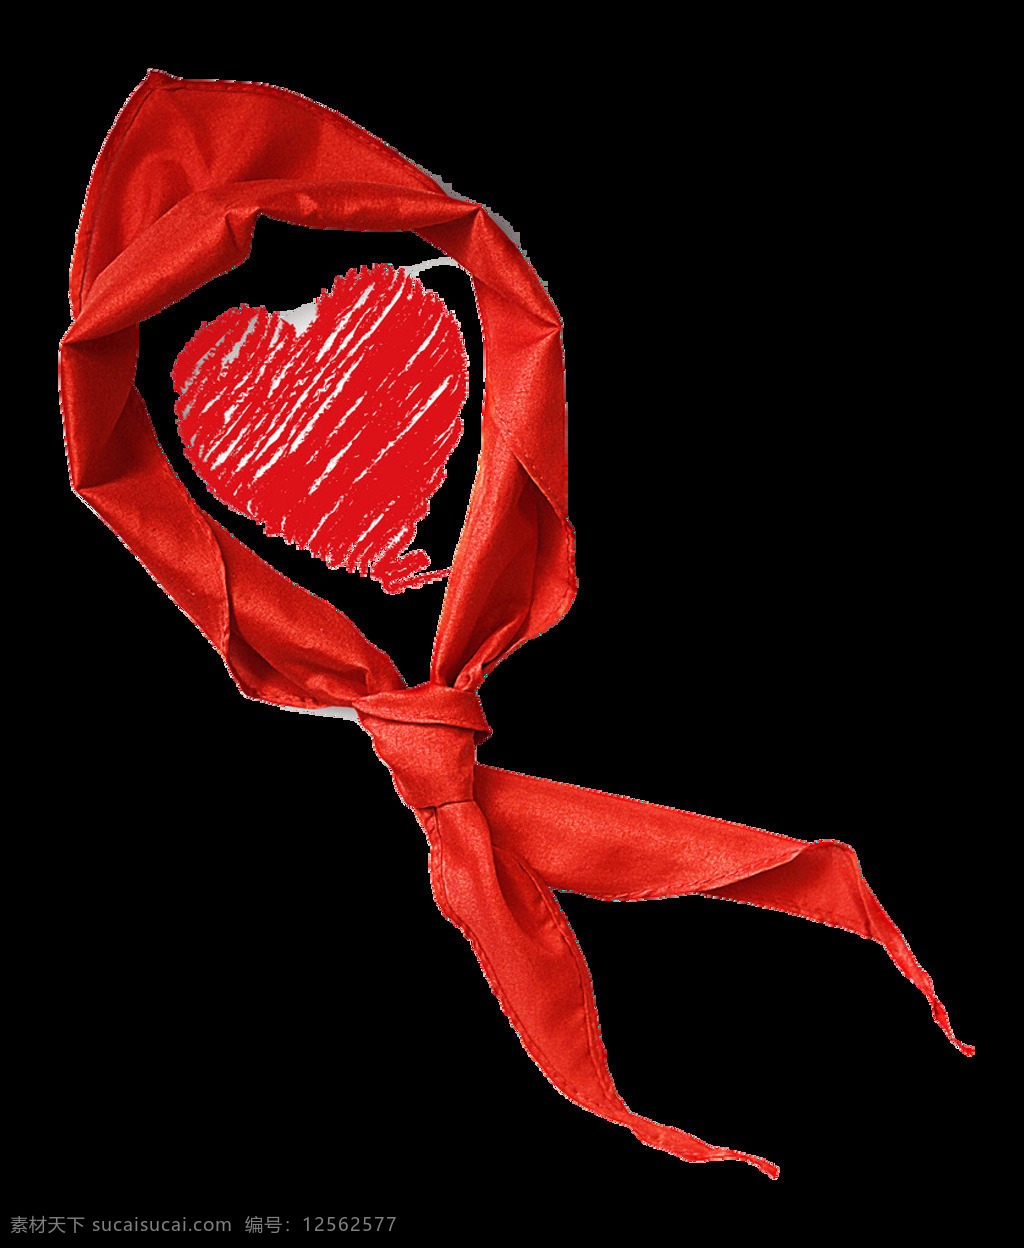 红领巾素材 红领巾 少先队 献爱心 志愿者 爱心 免抠